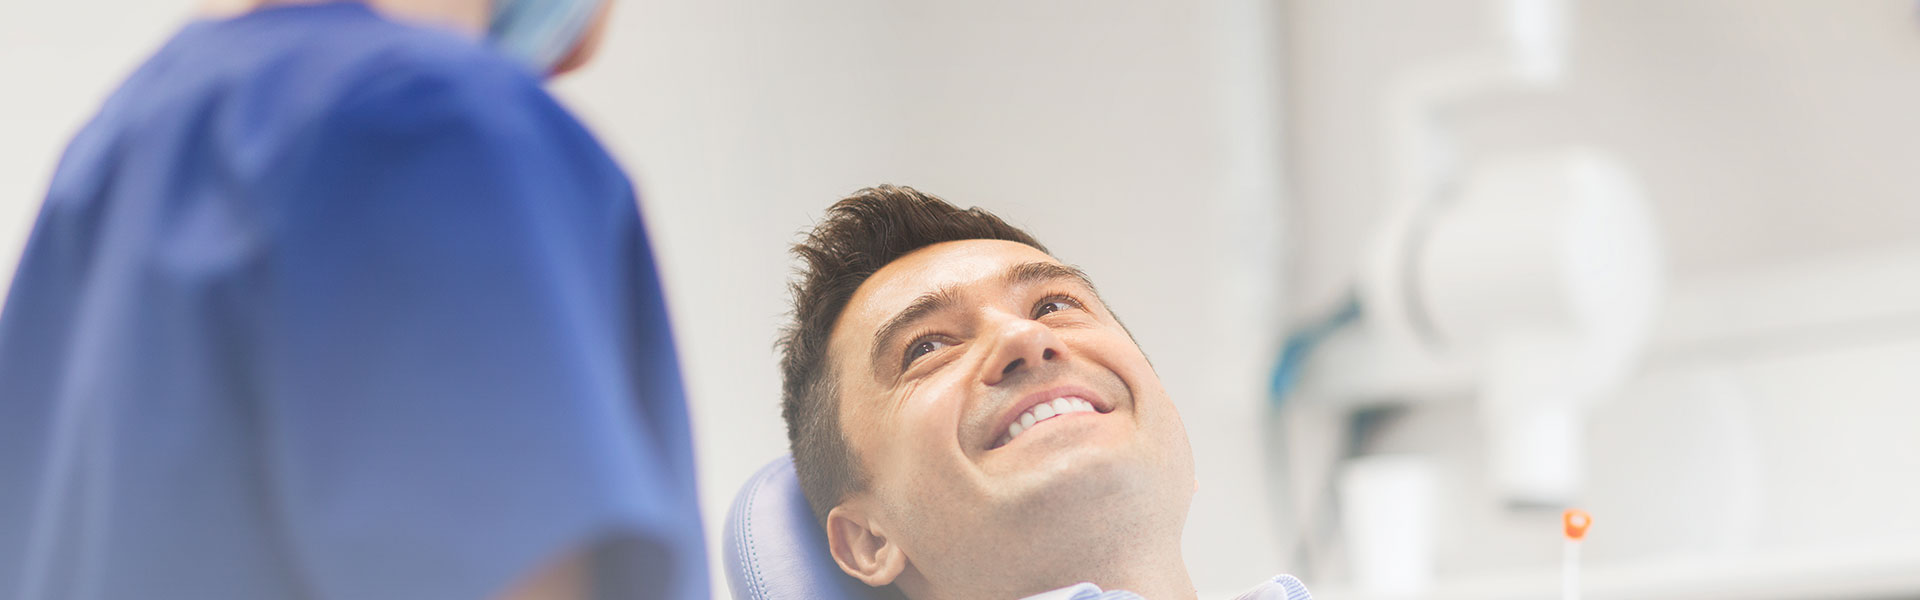 A man is smiling after dental bridges